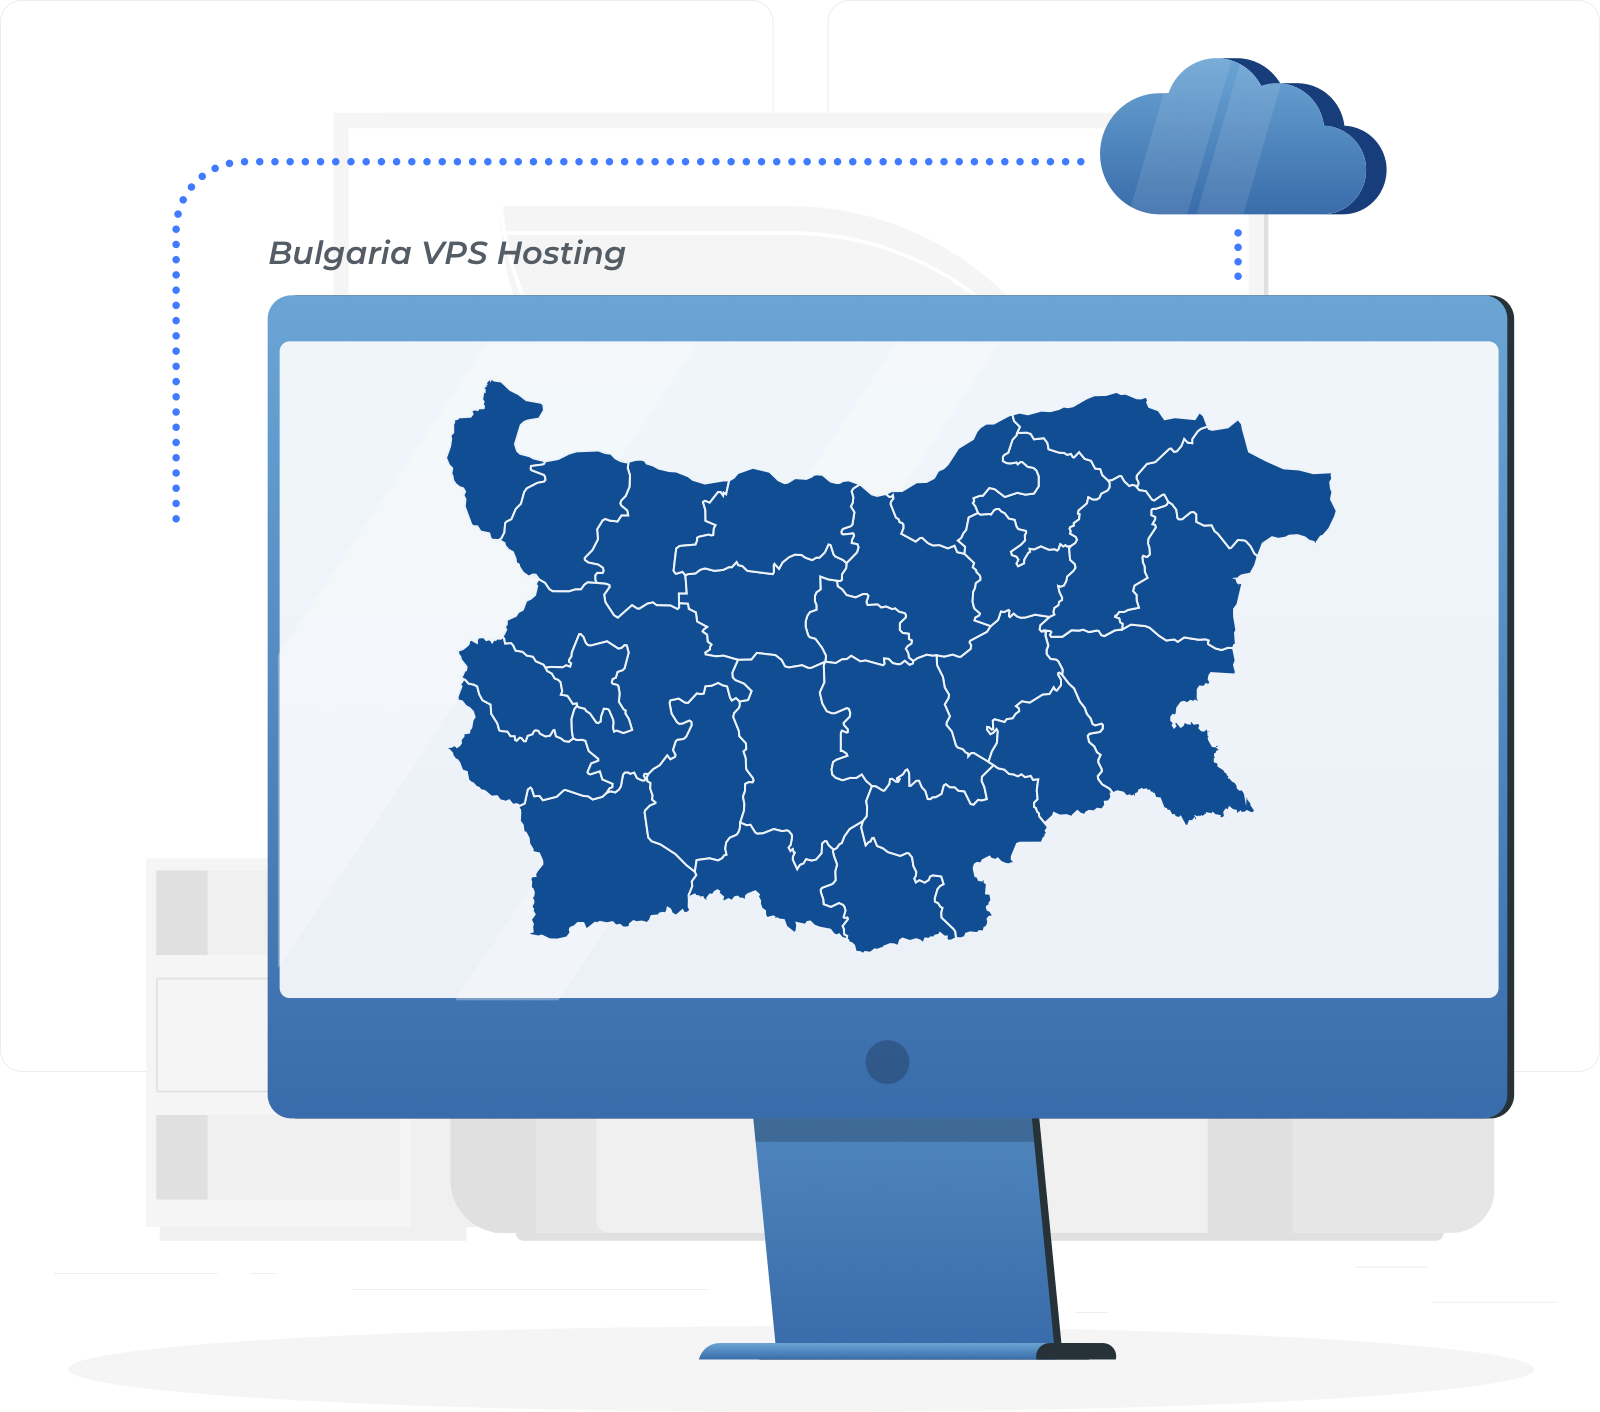 保加利亚 VPS，和高利用率的云服务